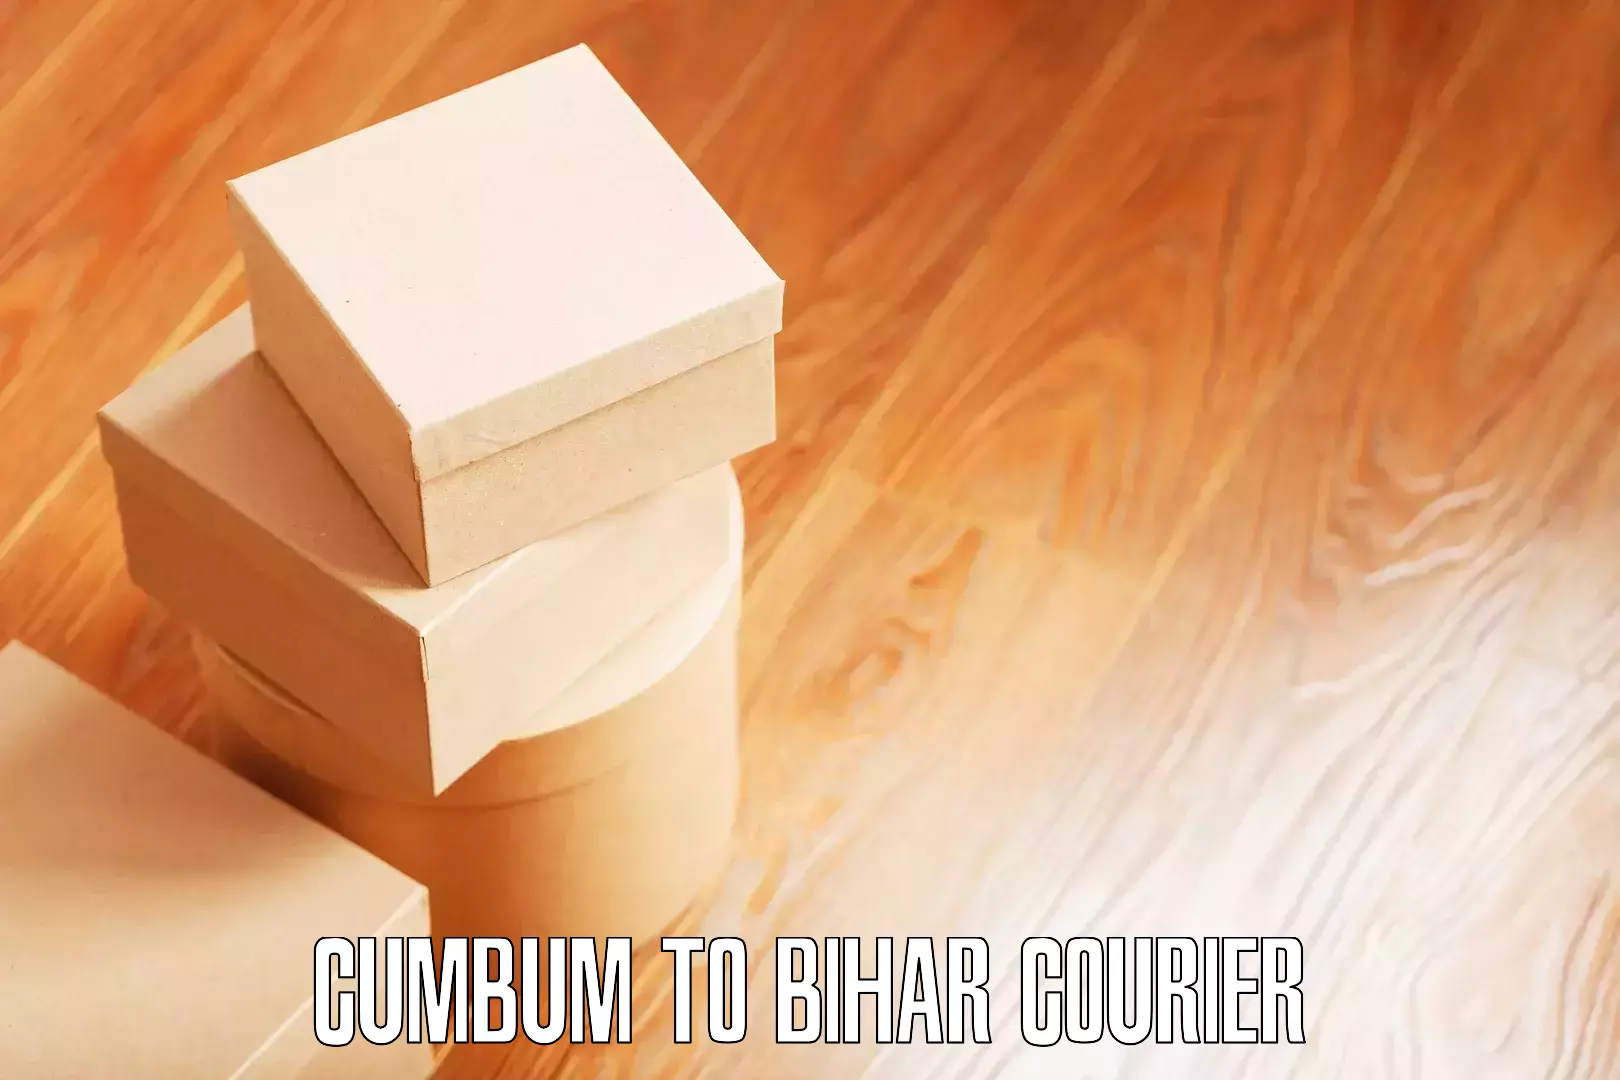 Safe furniture moving Cumbum to Bihar